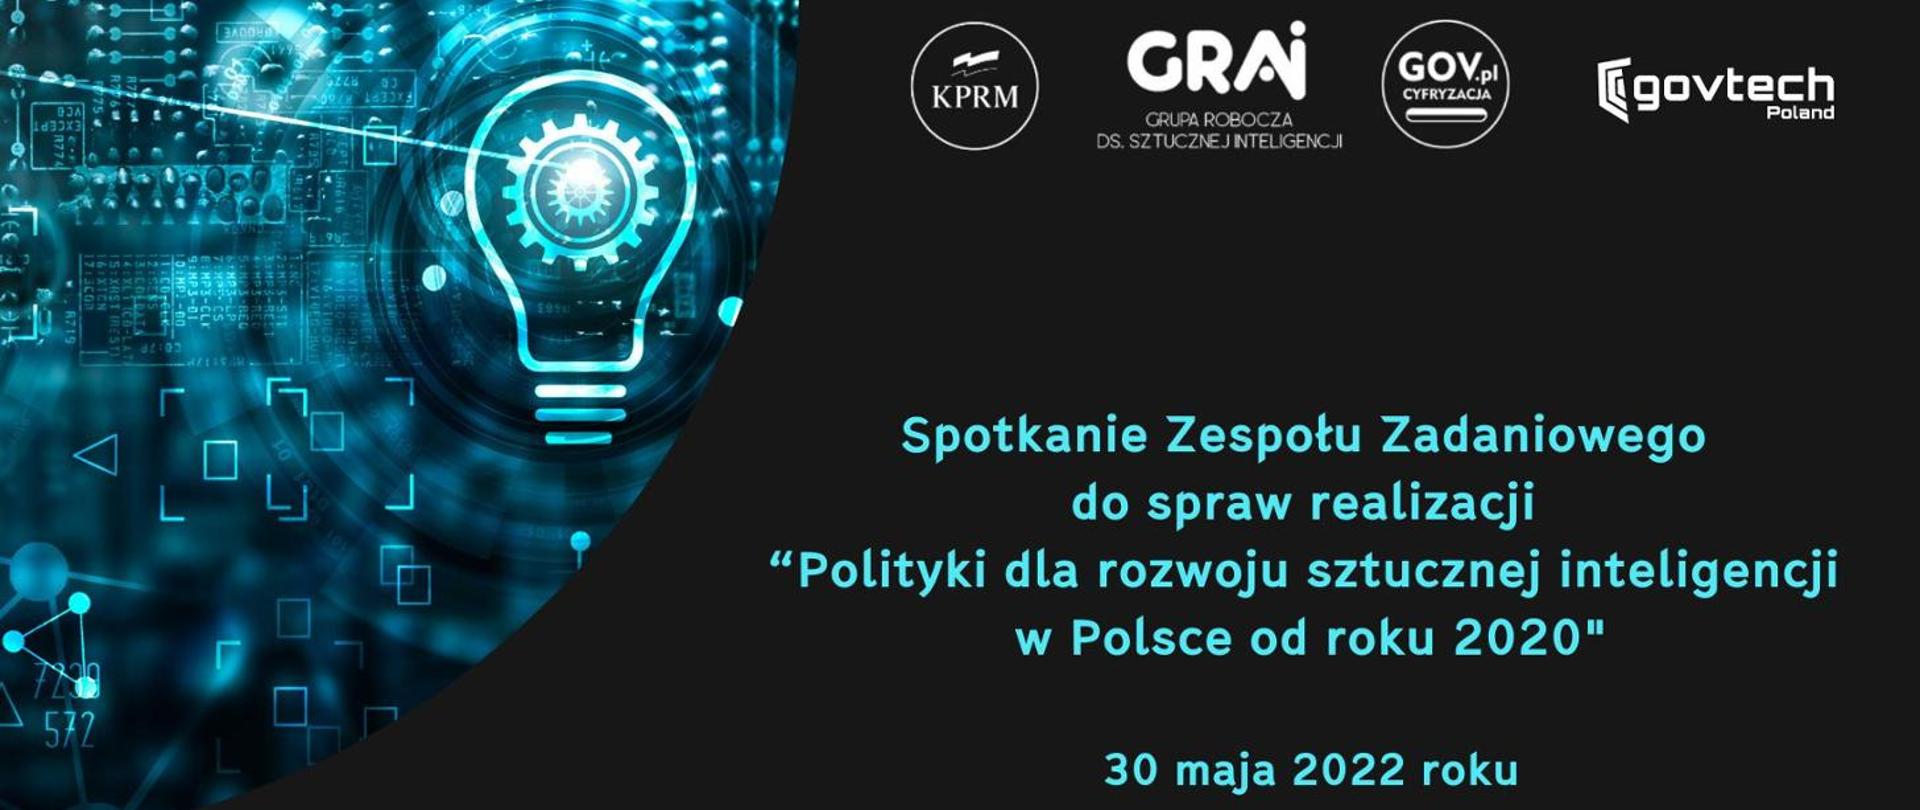 Spotkanie Zespołu Zadaniowego do spraw realizacji "Polityki dla rozwoju sztucznej inteligencji w Polsce od 2020 roku"
30 maja 2022 roku